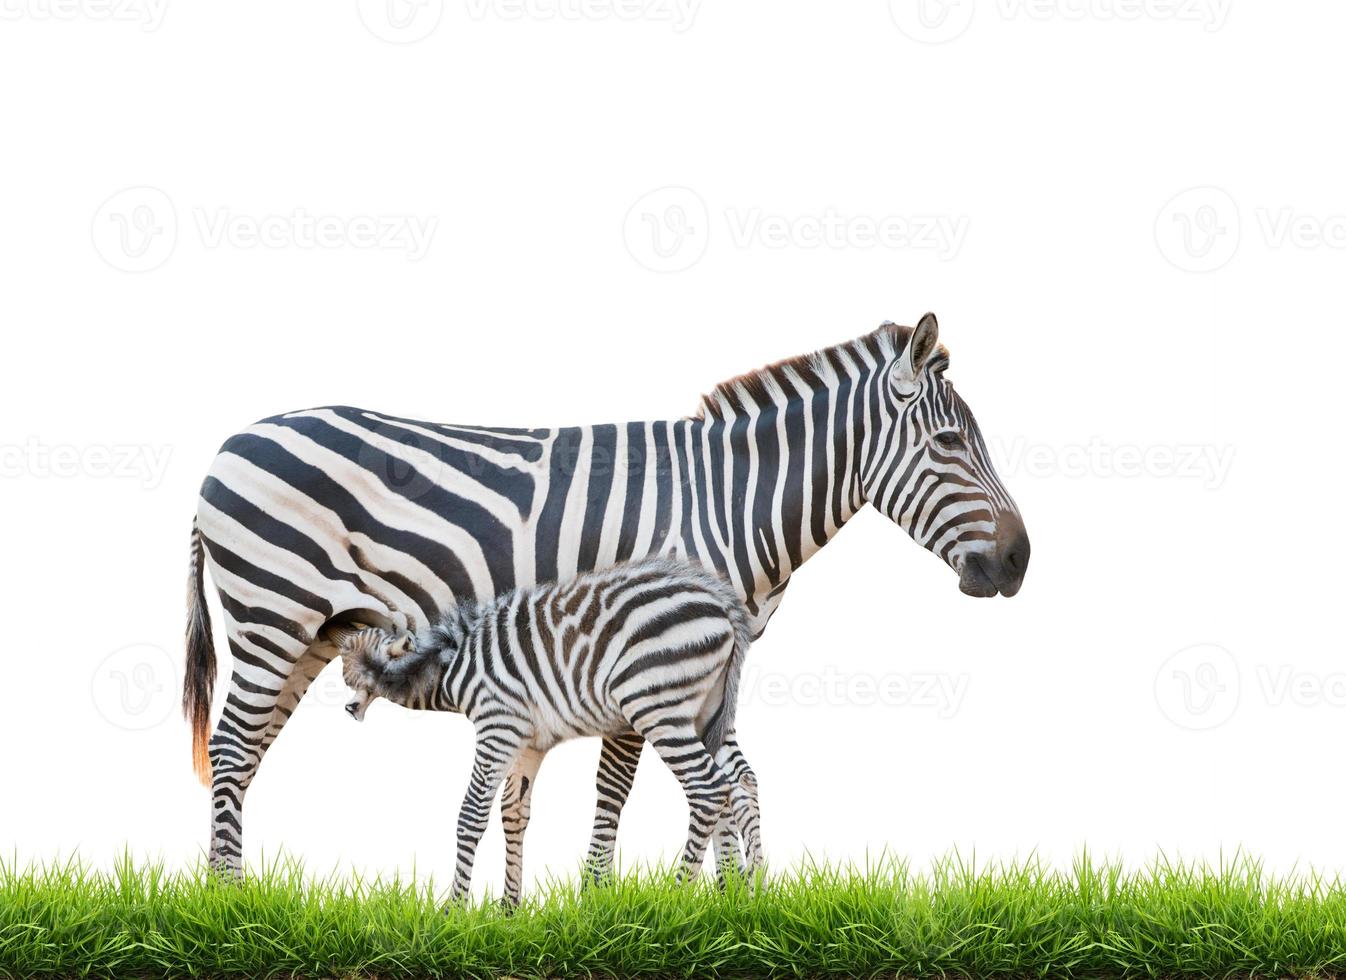 Zebra was breastfeeding photo